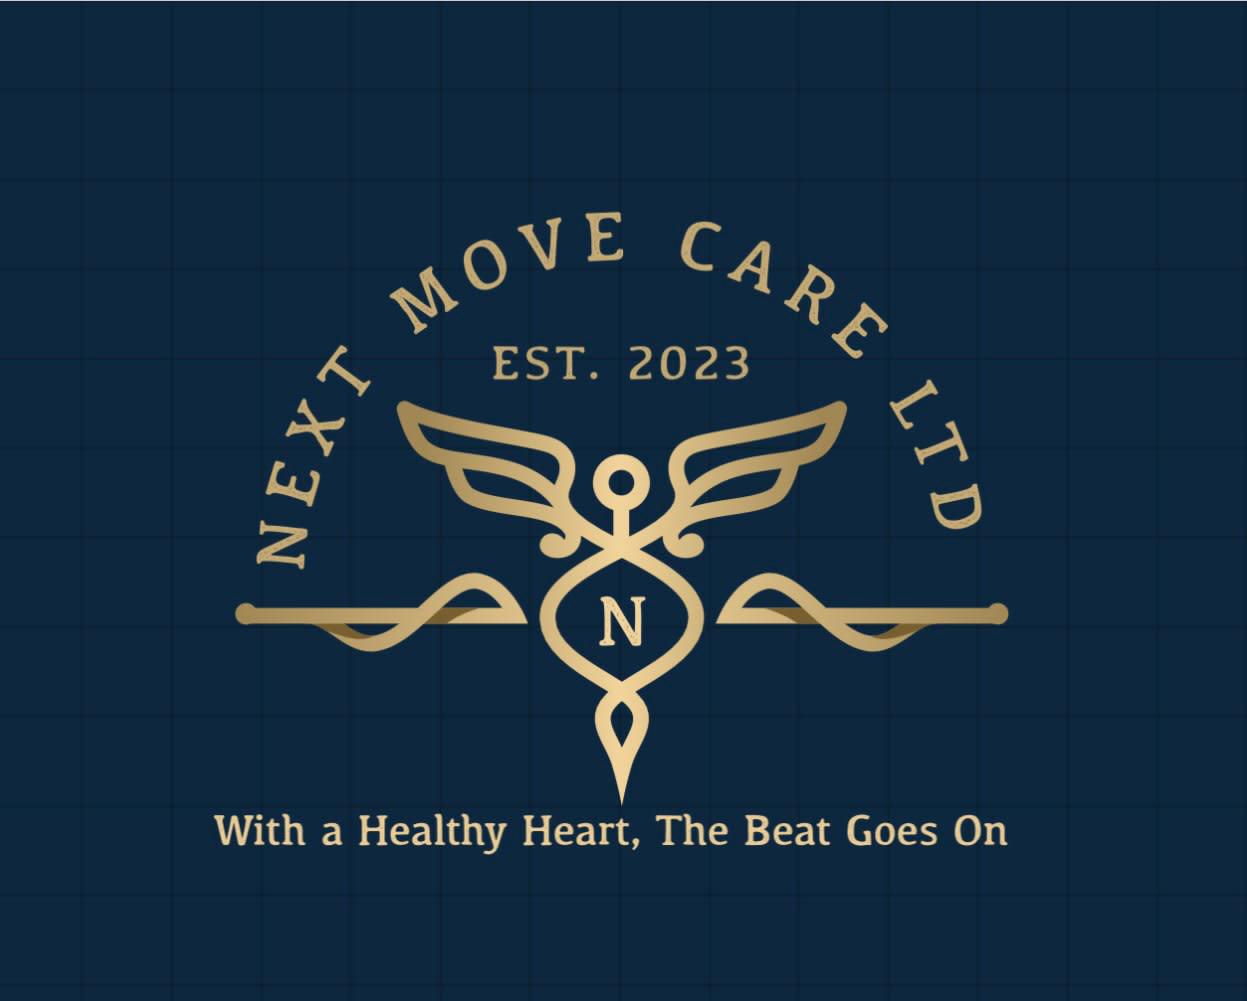 Images Next Move Care Ltd